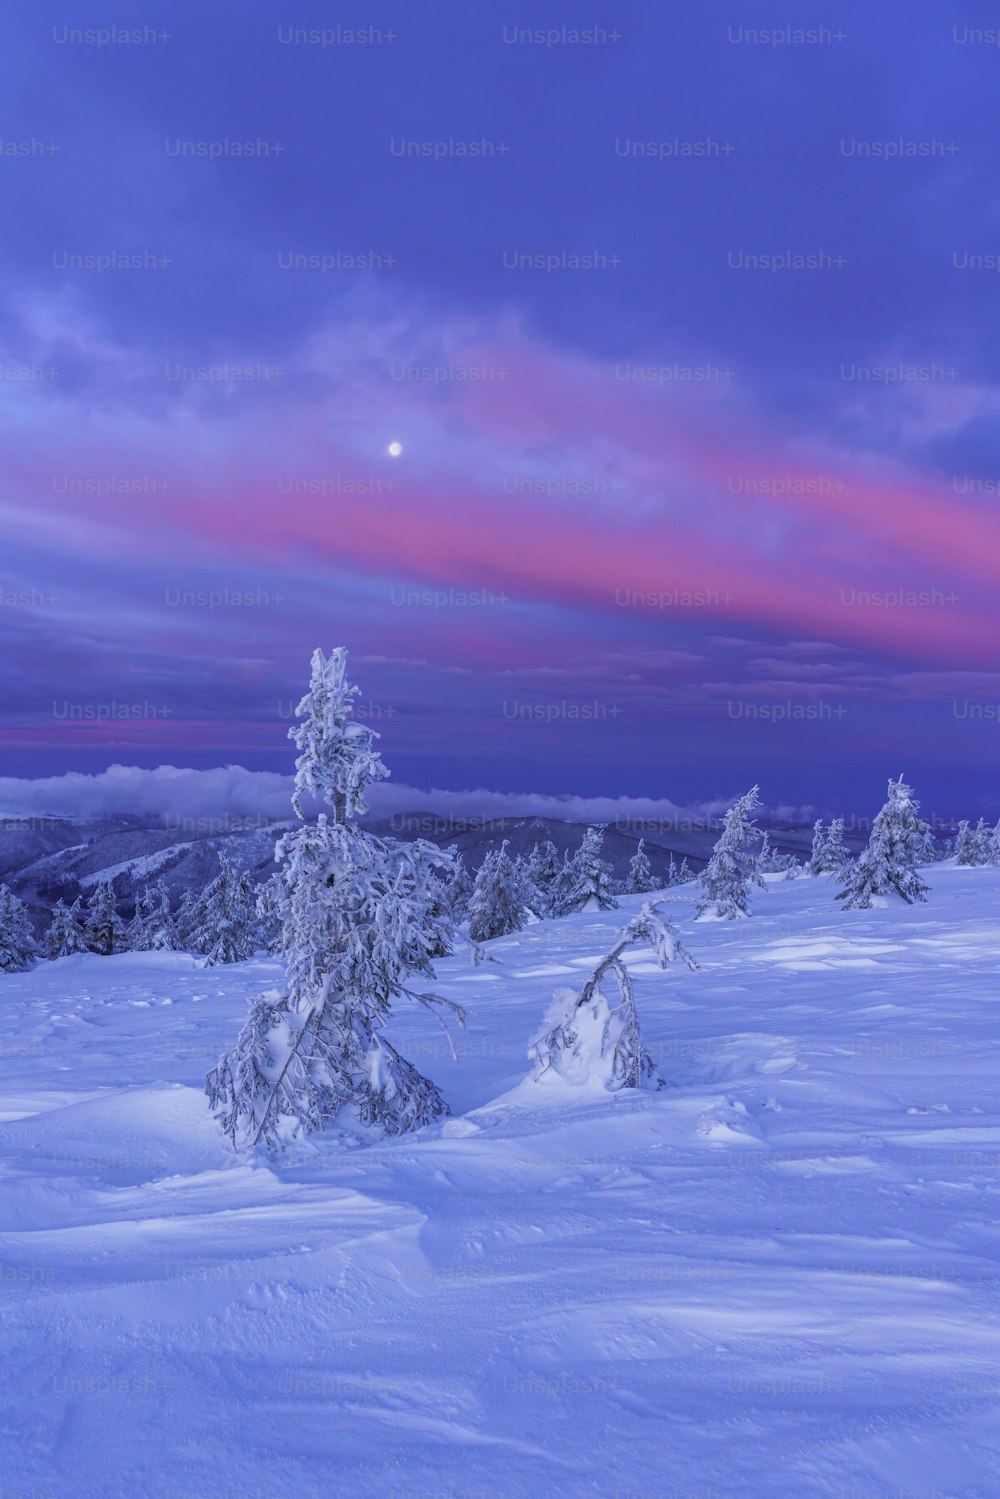 Eine verschneite Landschaft mit Bäumen und rosa Himmel